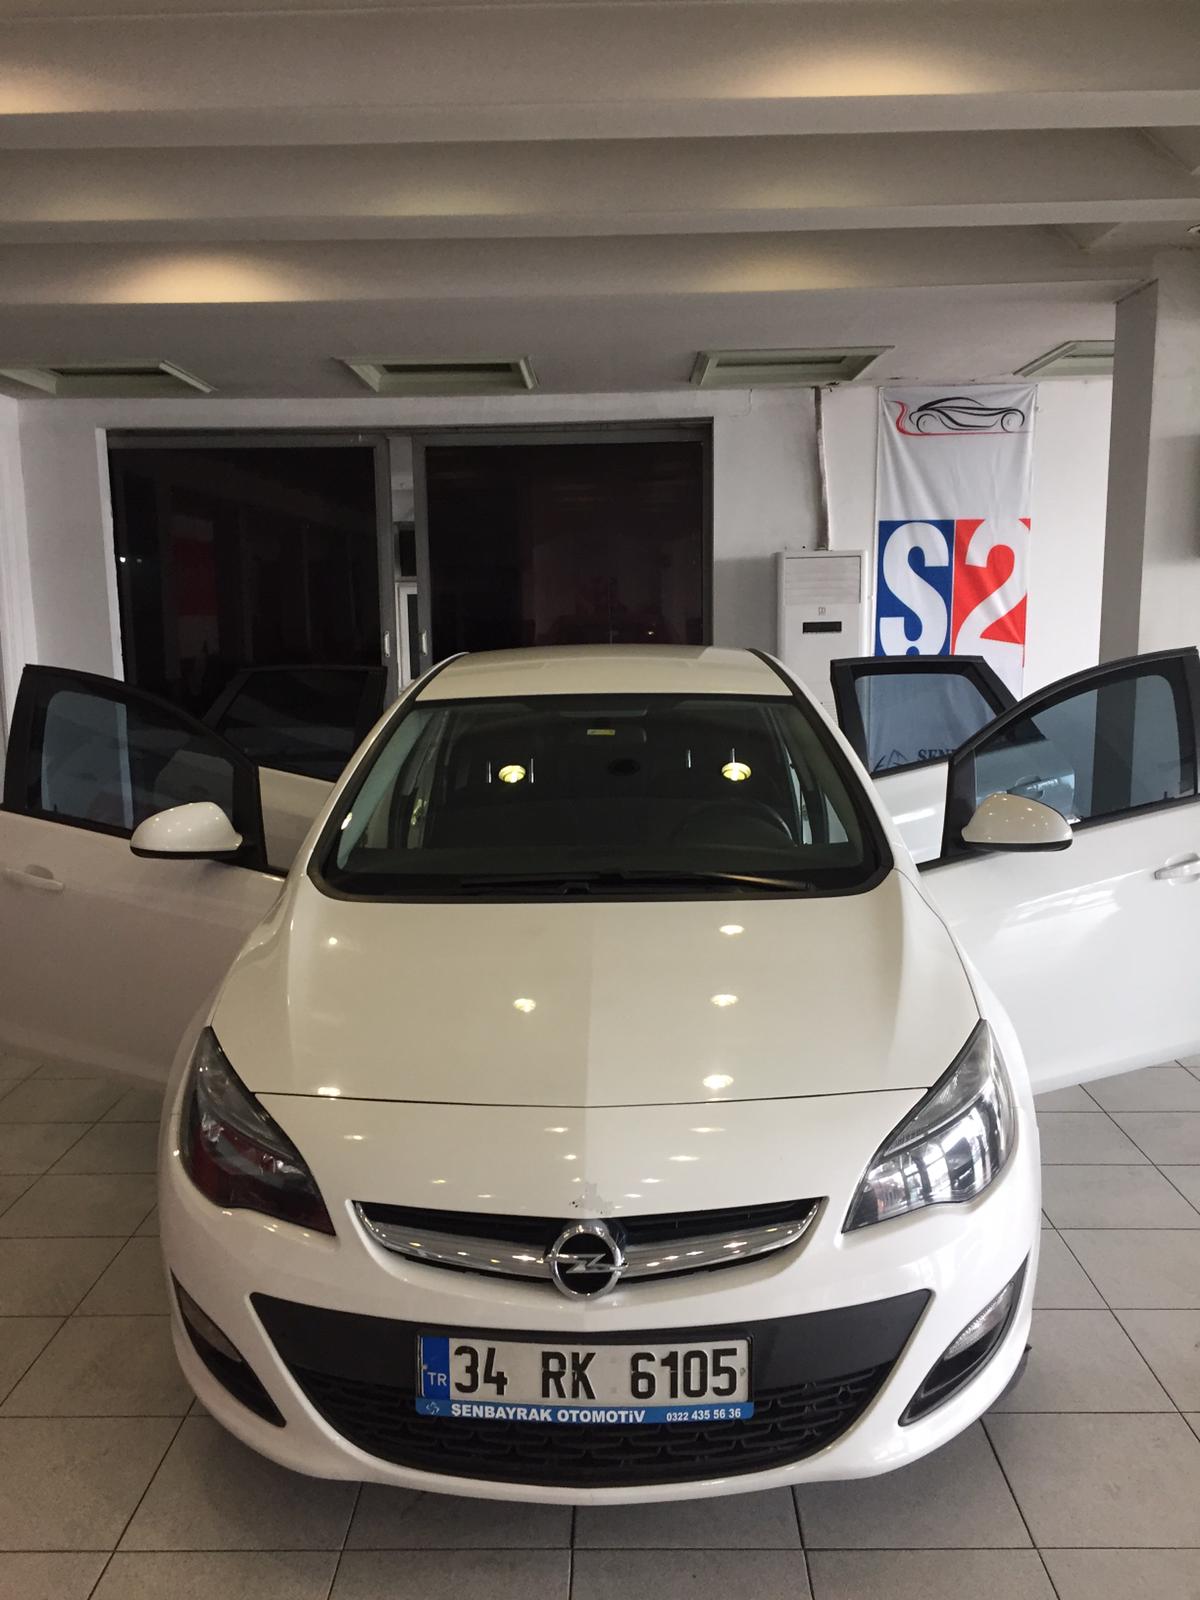 34 RK 6105 - 363.500 TL 2016 Opel  Astra  1.6 CDTI Design DİZEL OTOMATİK